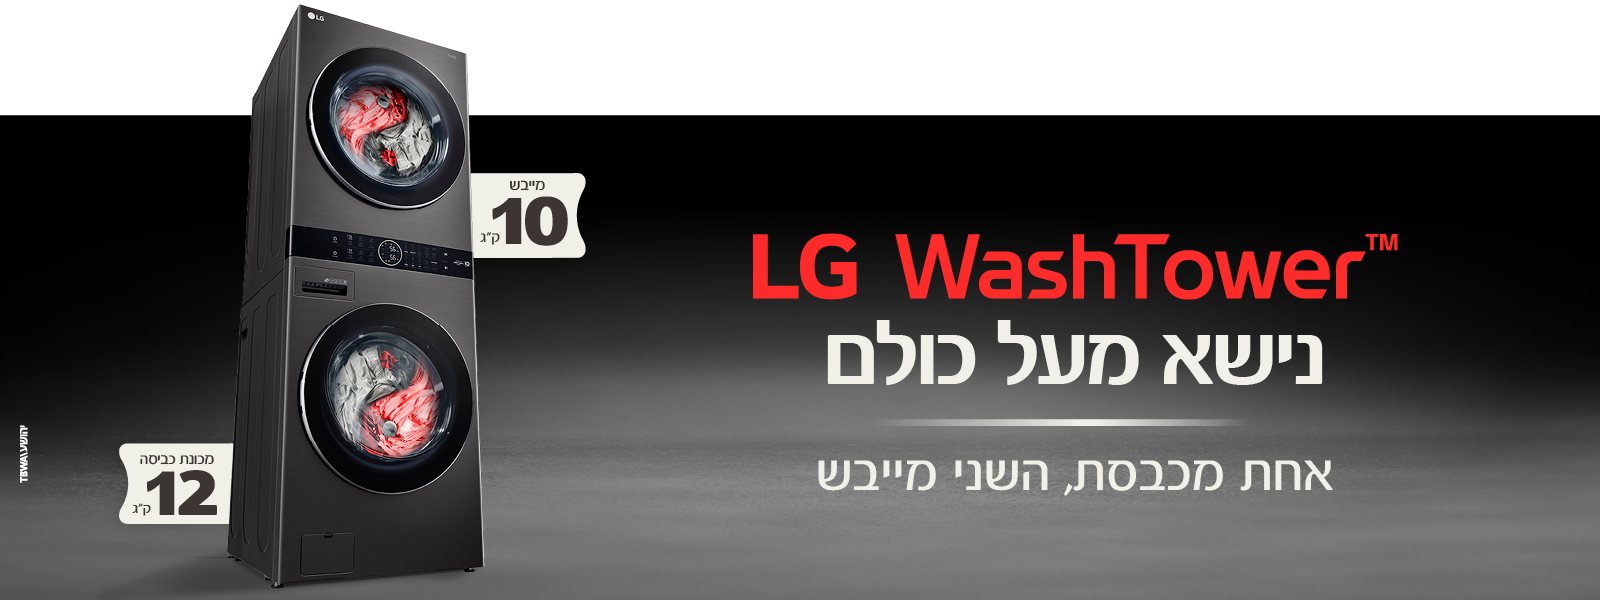 LG washtower